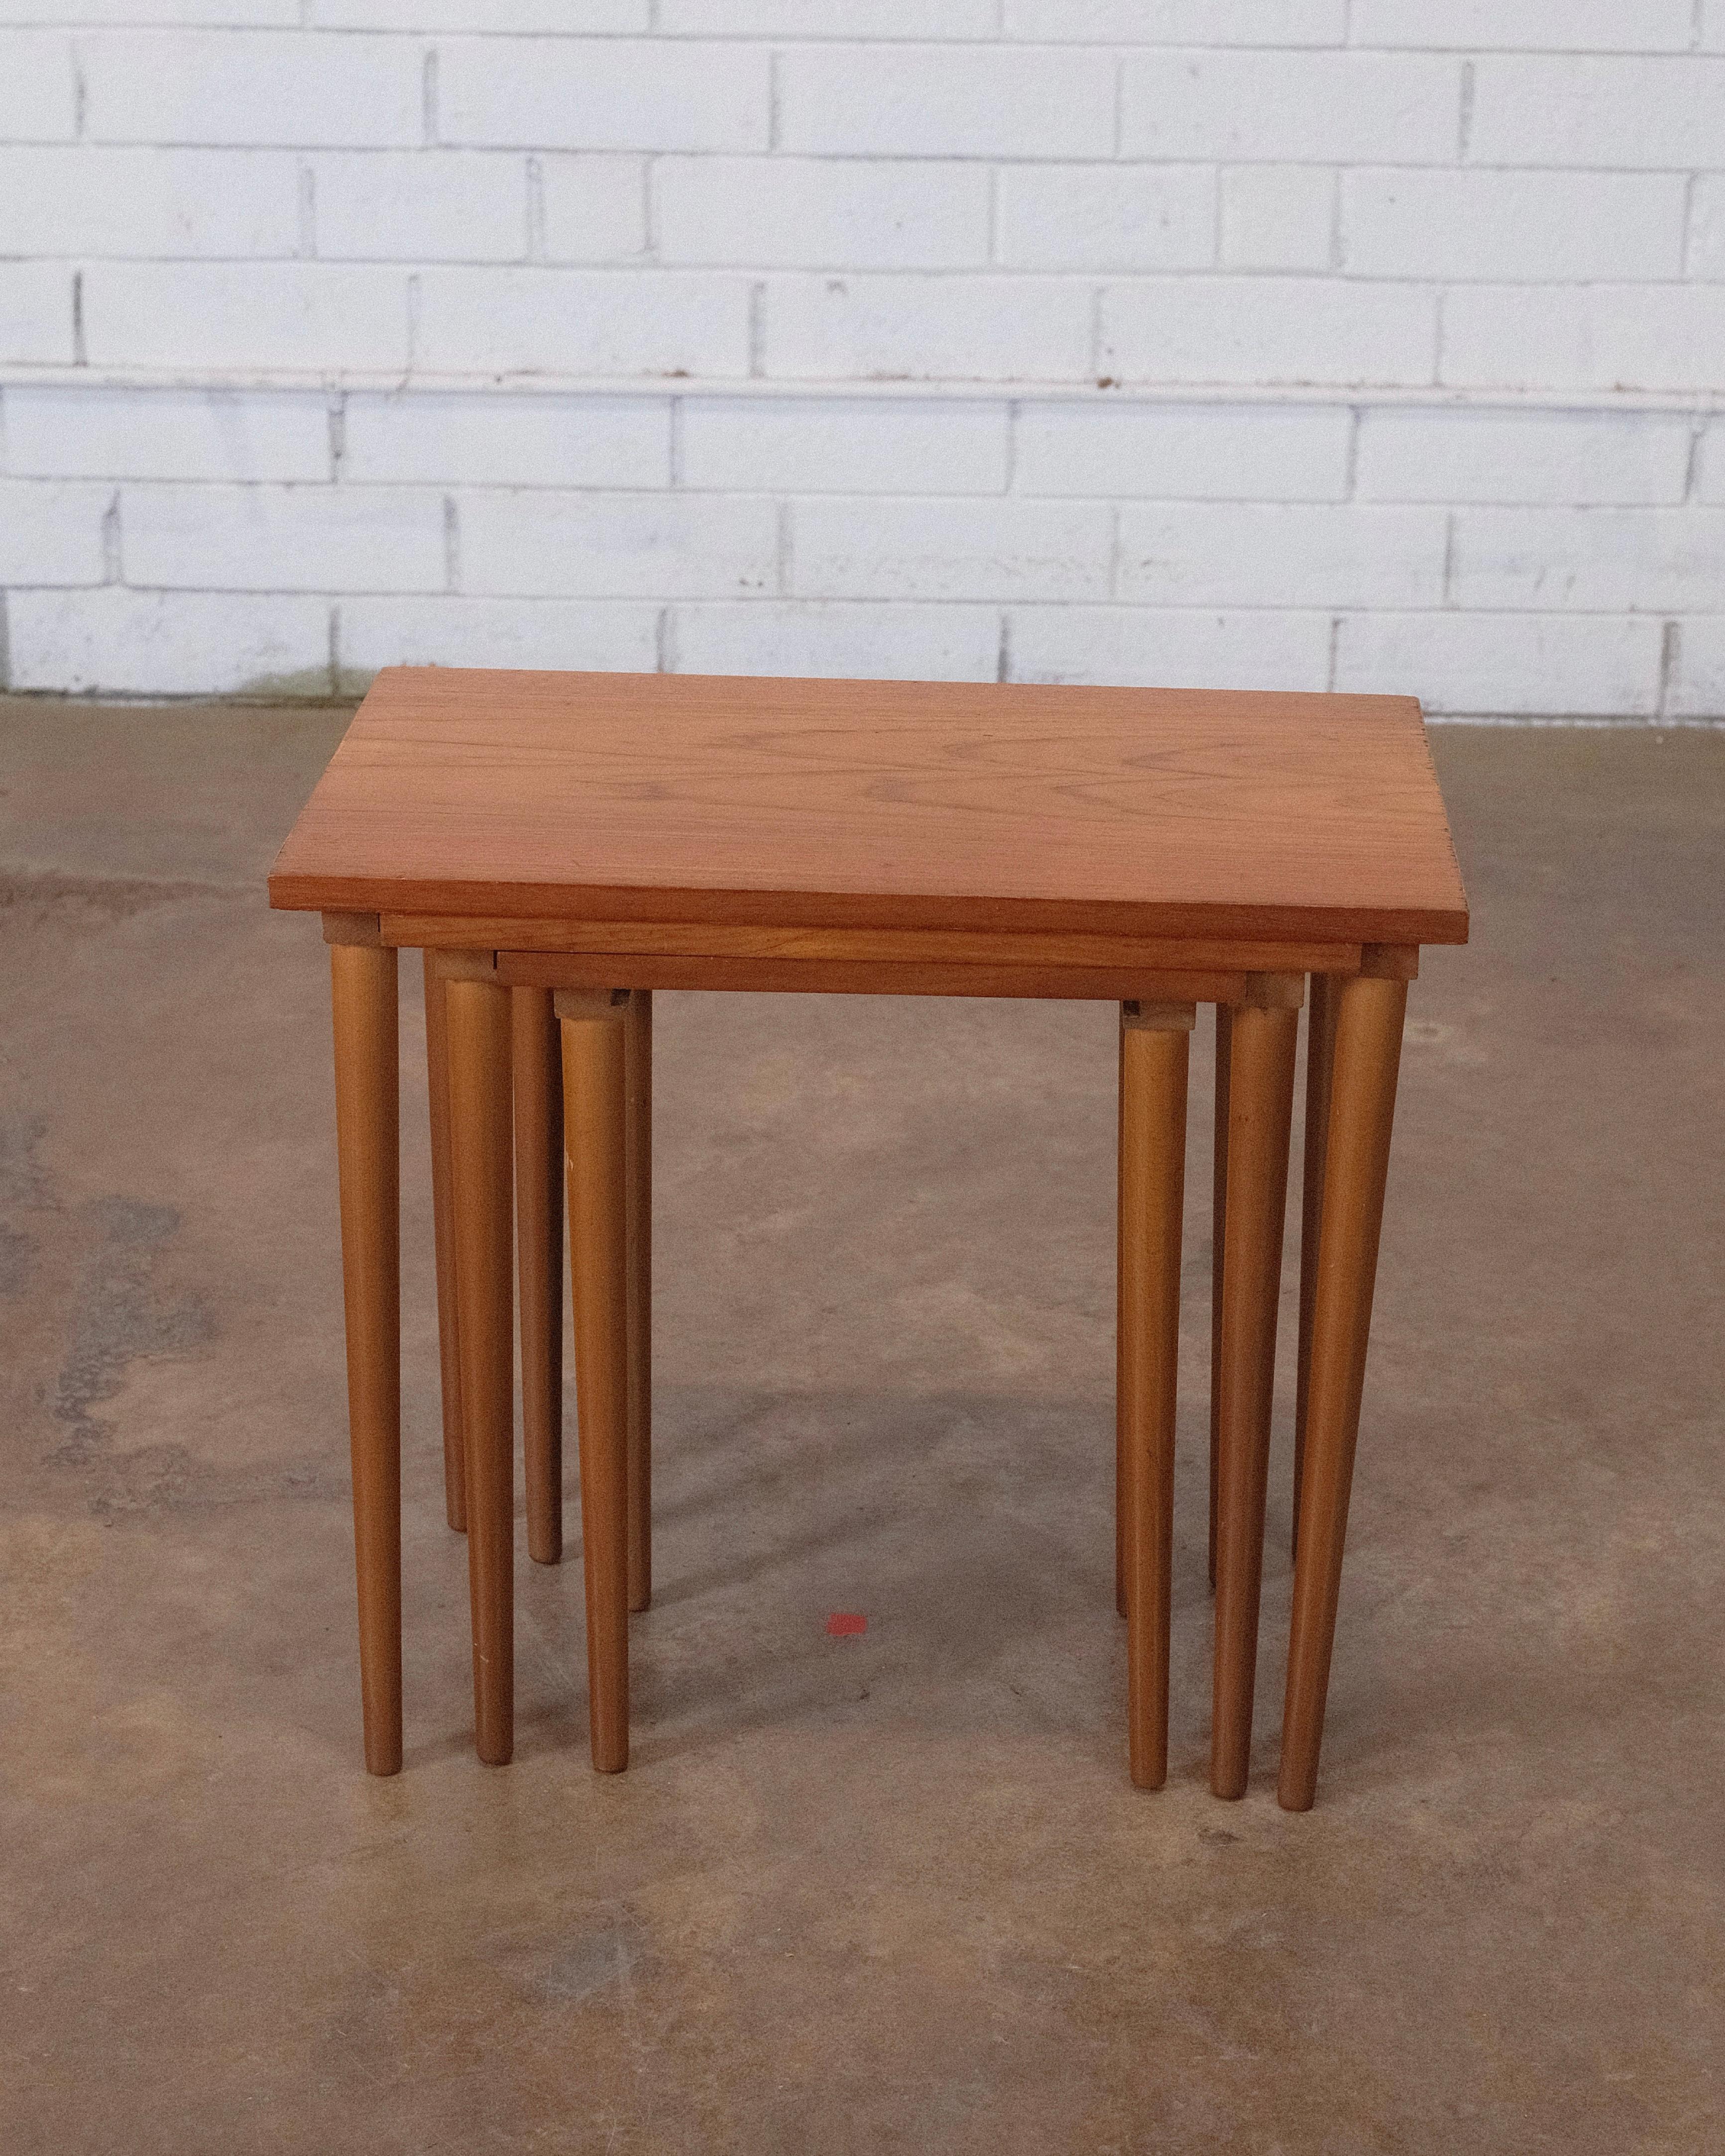 Cet ensemble exquis de trois tables gigognes, un chef-d'œuvre conçu par H.W. Klein pour Bramin Furniture of Denmark, allie sans effort la forme et la fonction. Fabriquées avec une attention méticuleuse aux détails, ces tables mettent en valeur la